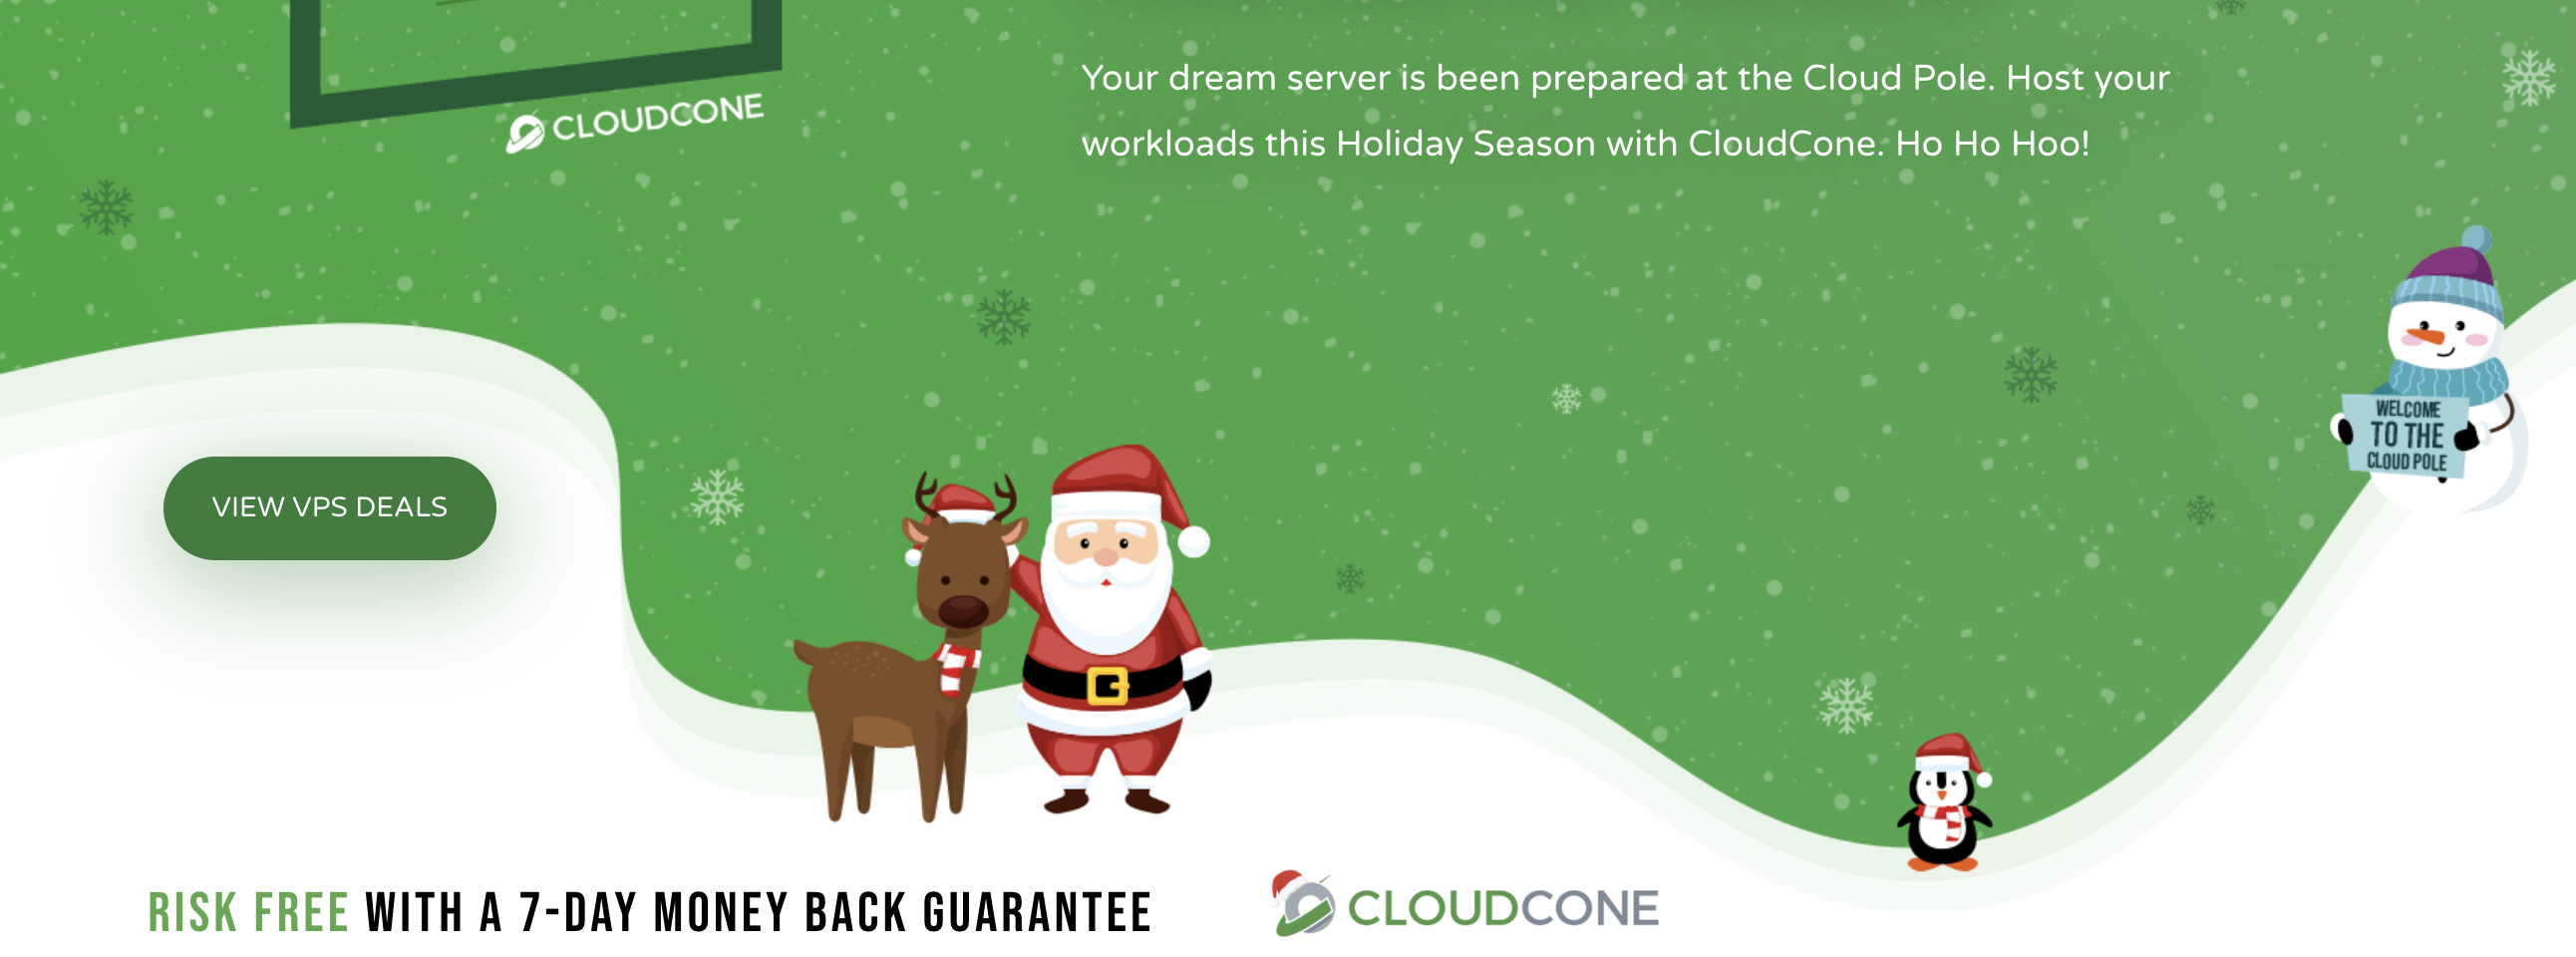 【圣诞特价活动】Cloudcone2021年的圣诞促销